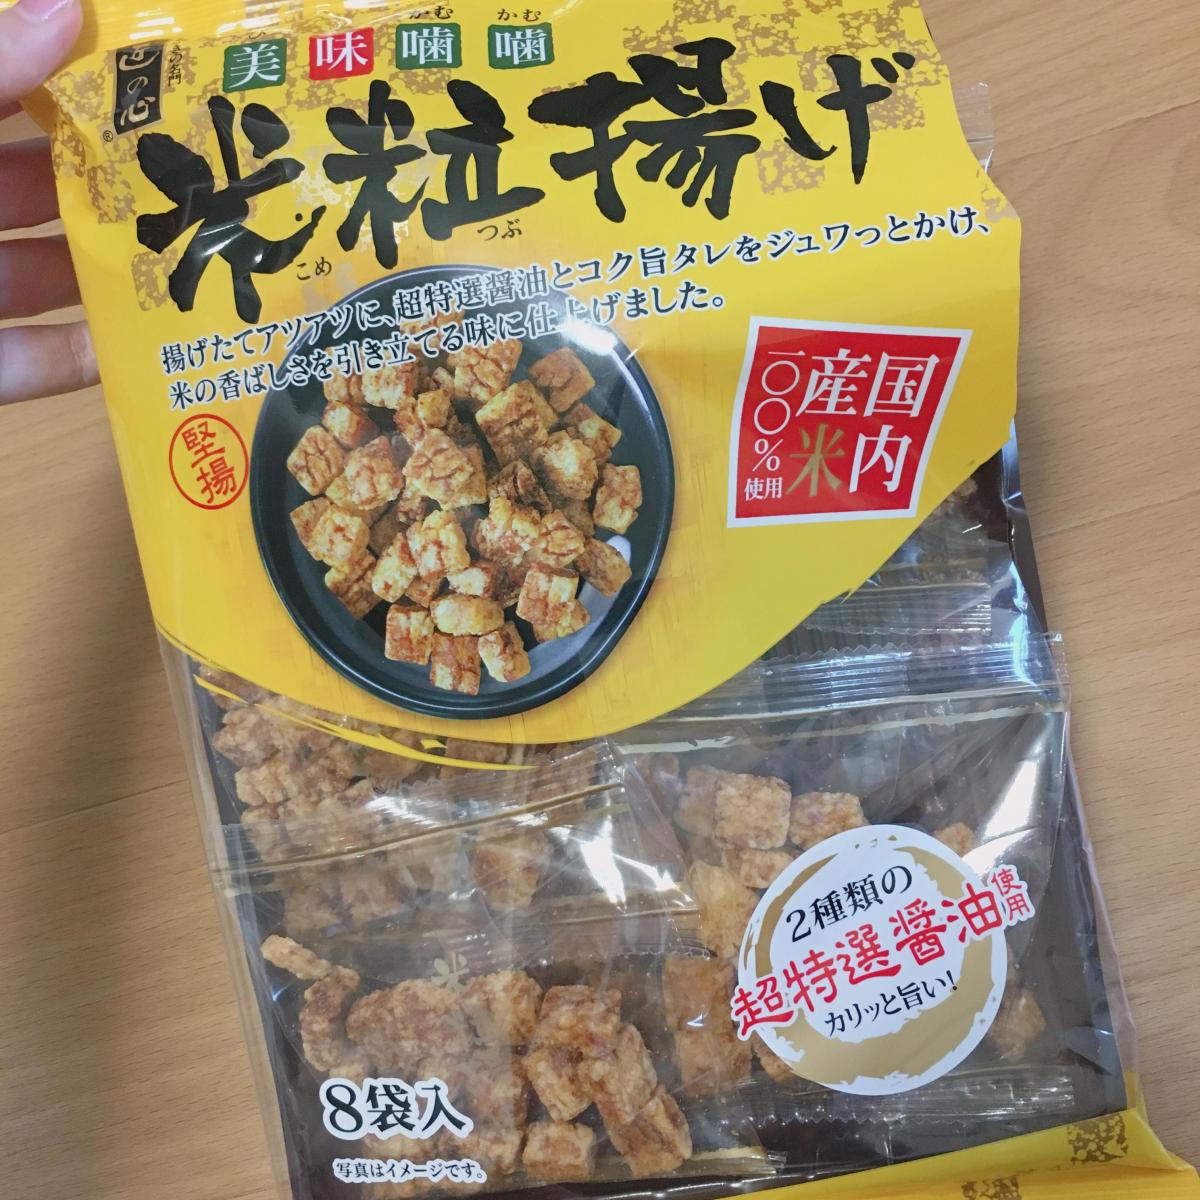 丸彦製菓 米粒揚げの商品ページ